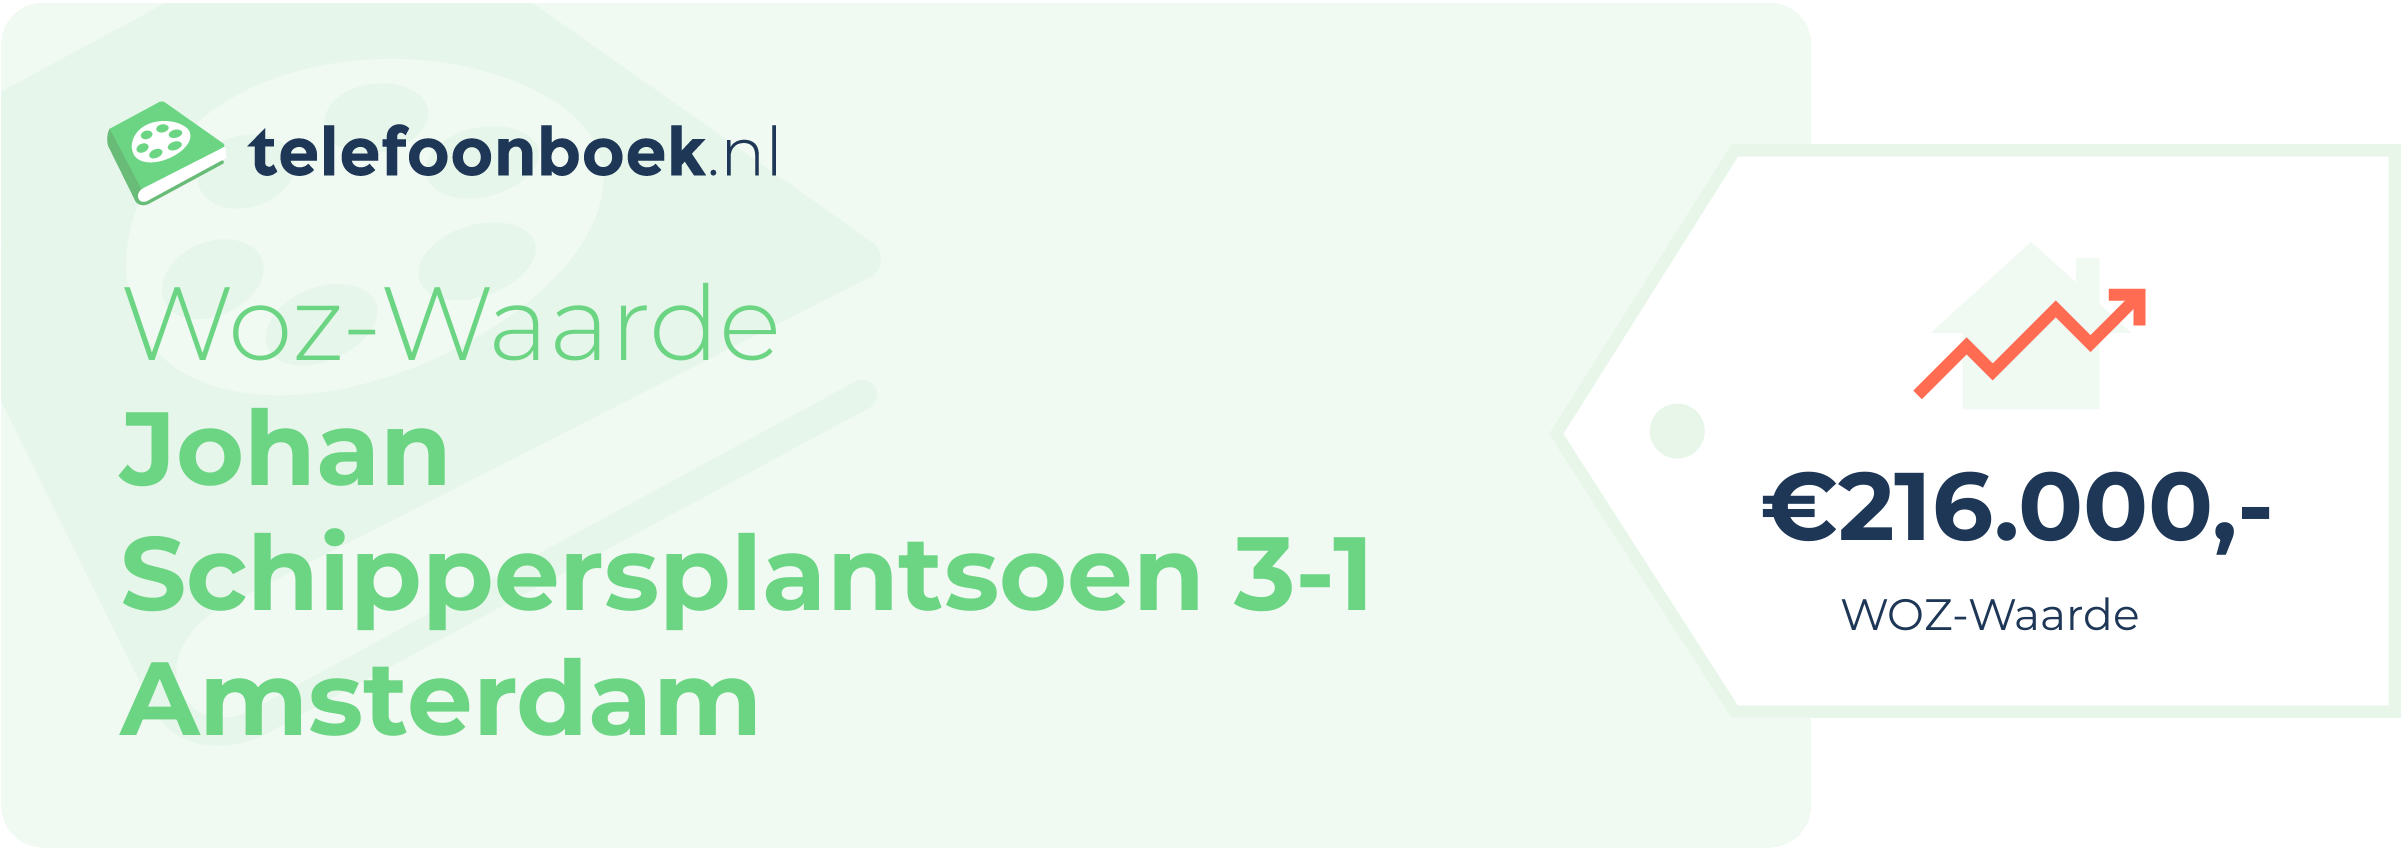 WOZ-waarde Johan Schippersplantsoen 3-1 Amsterdam